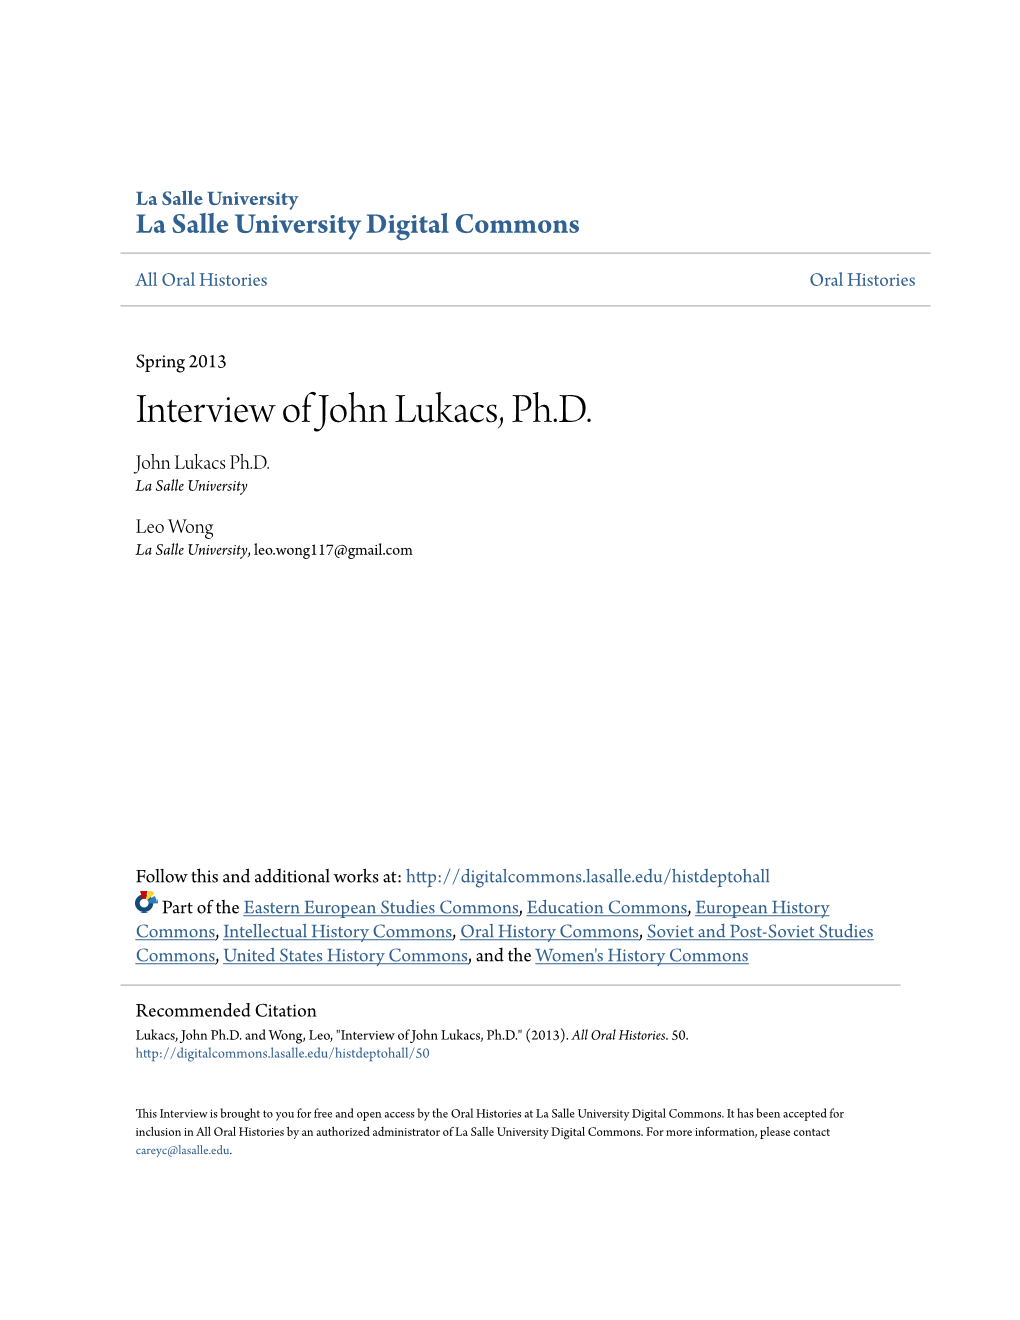 Interview of John Lukacs, Ph.D. John Lukacs Ph.D